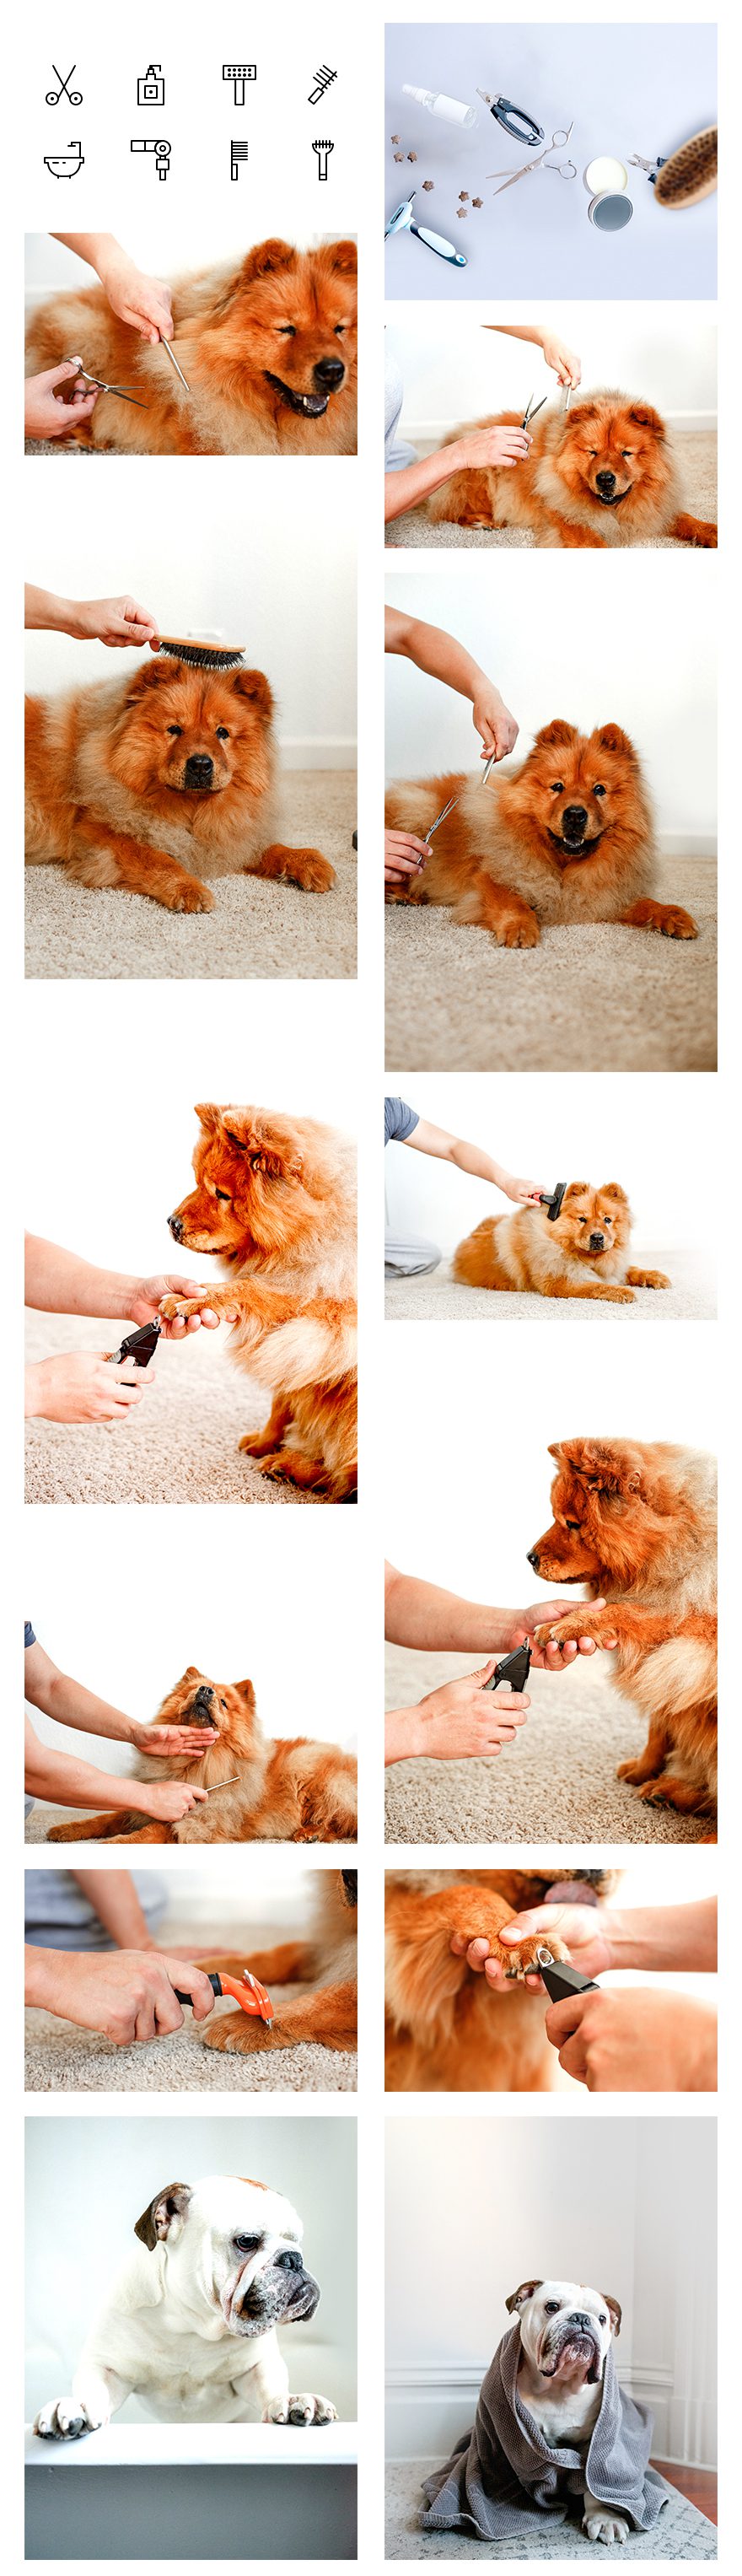 dog grooming website